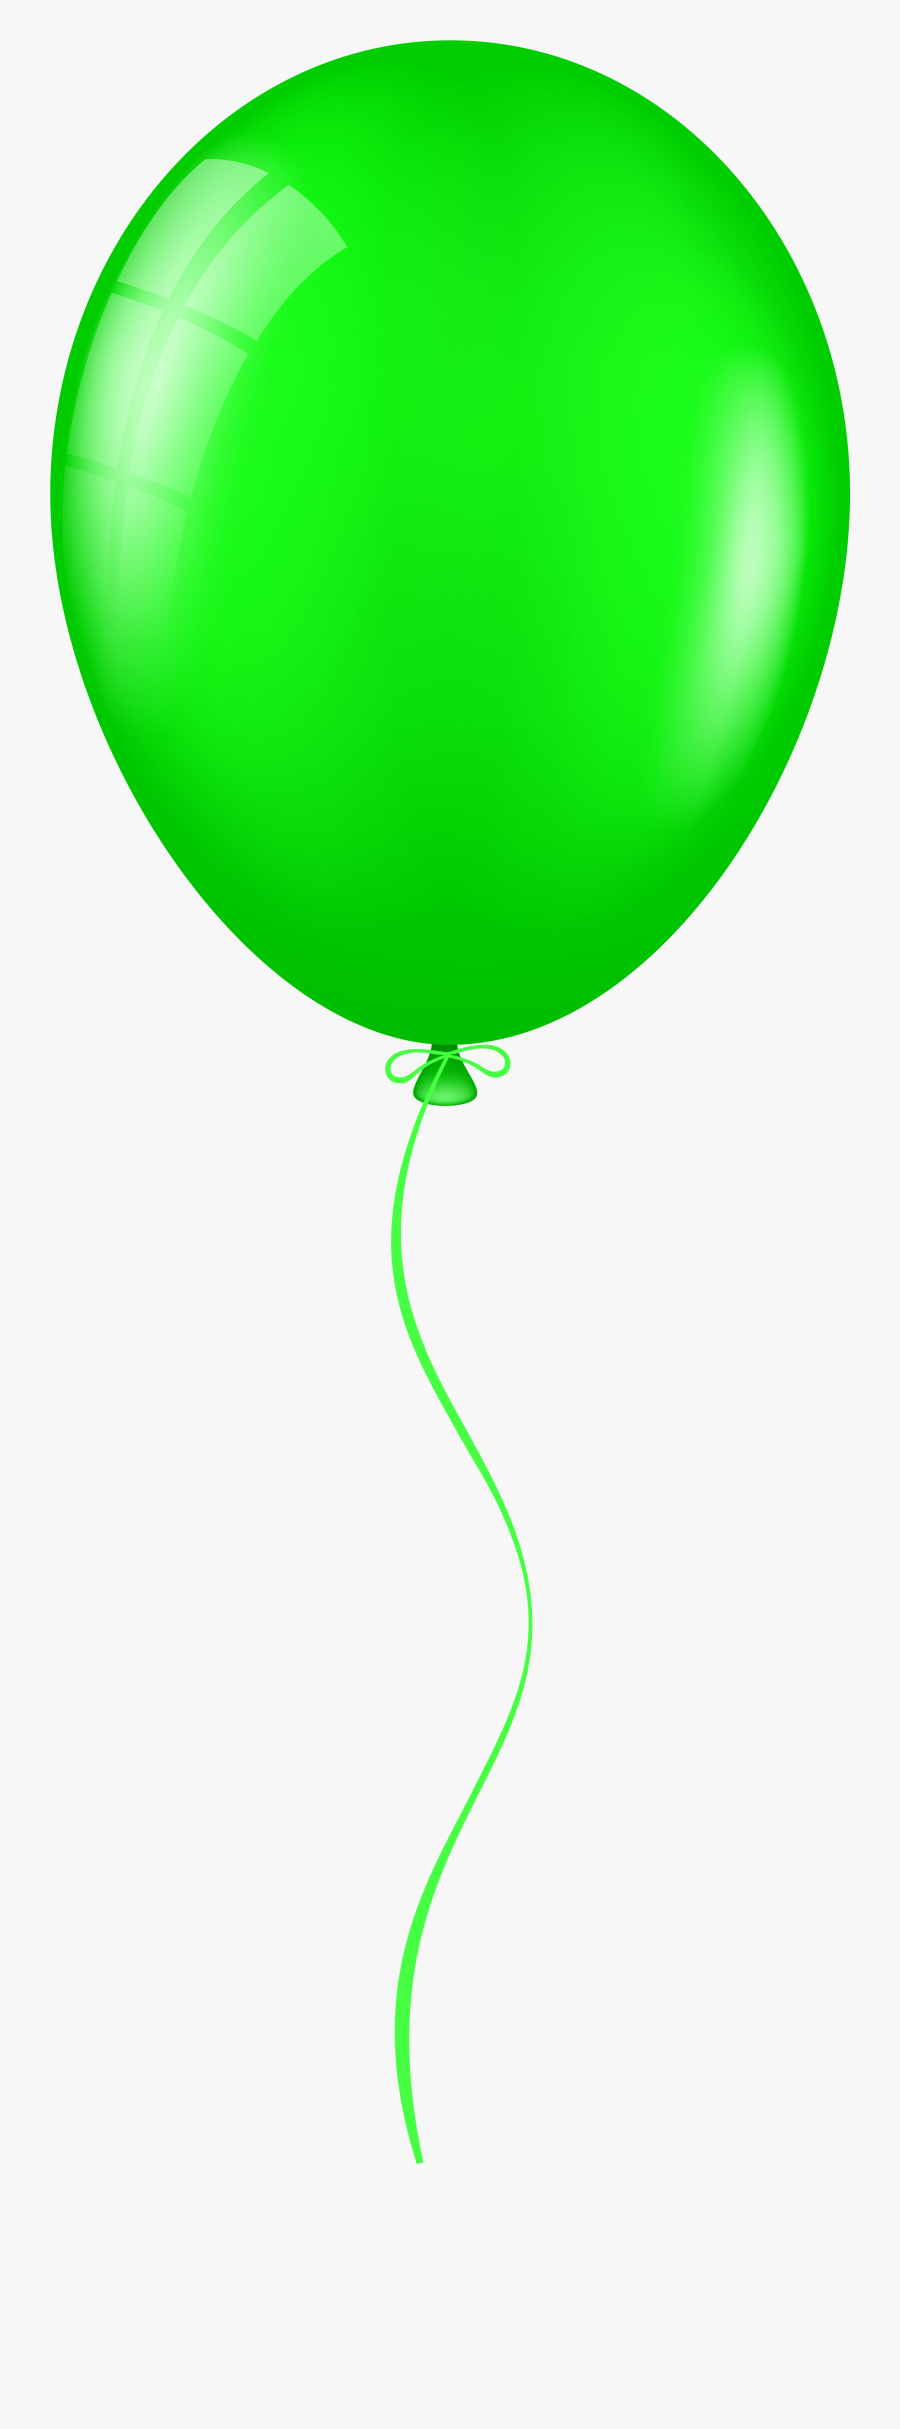 Green Balloon Png Clip Art - Green Balloon Transparent, Transparent Clipart